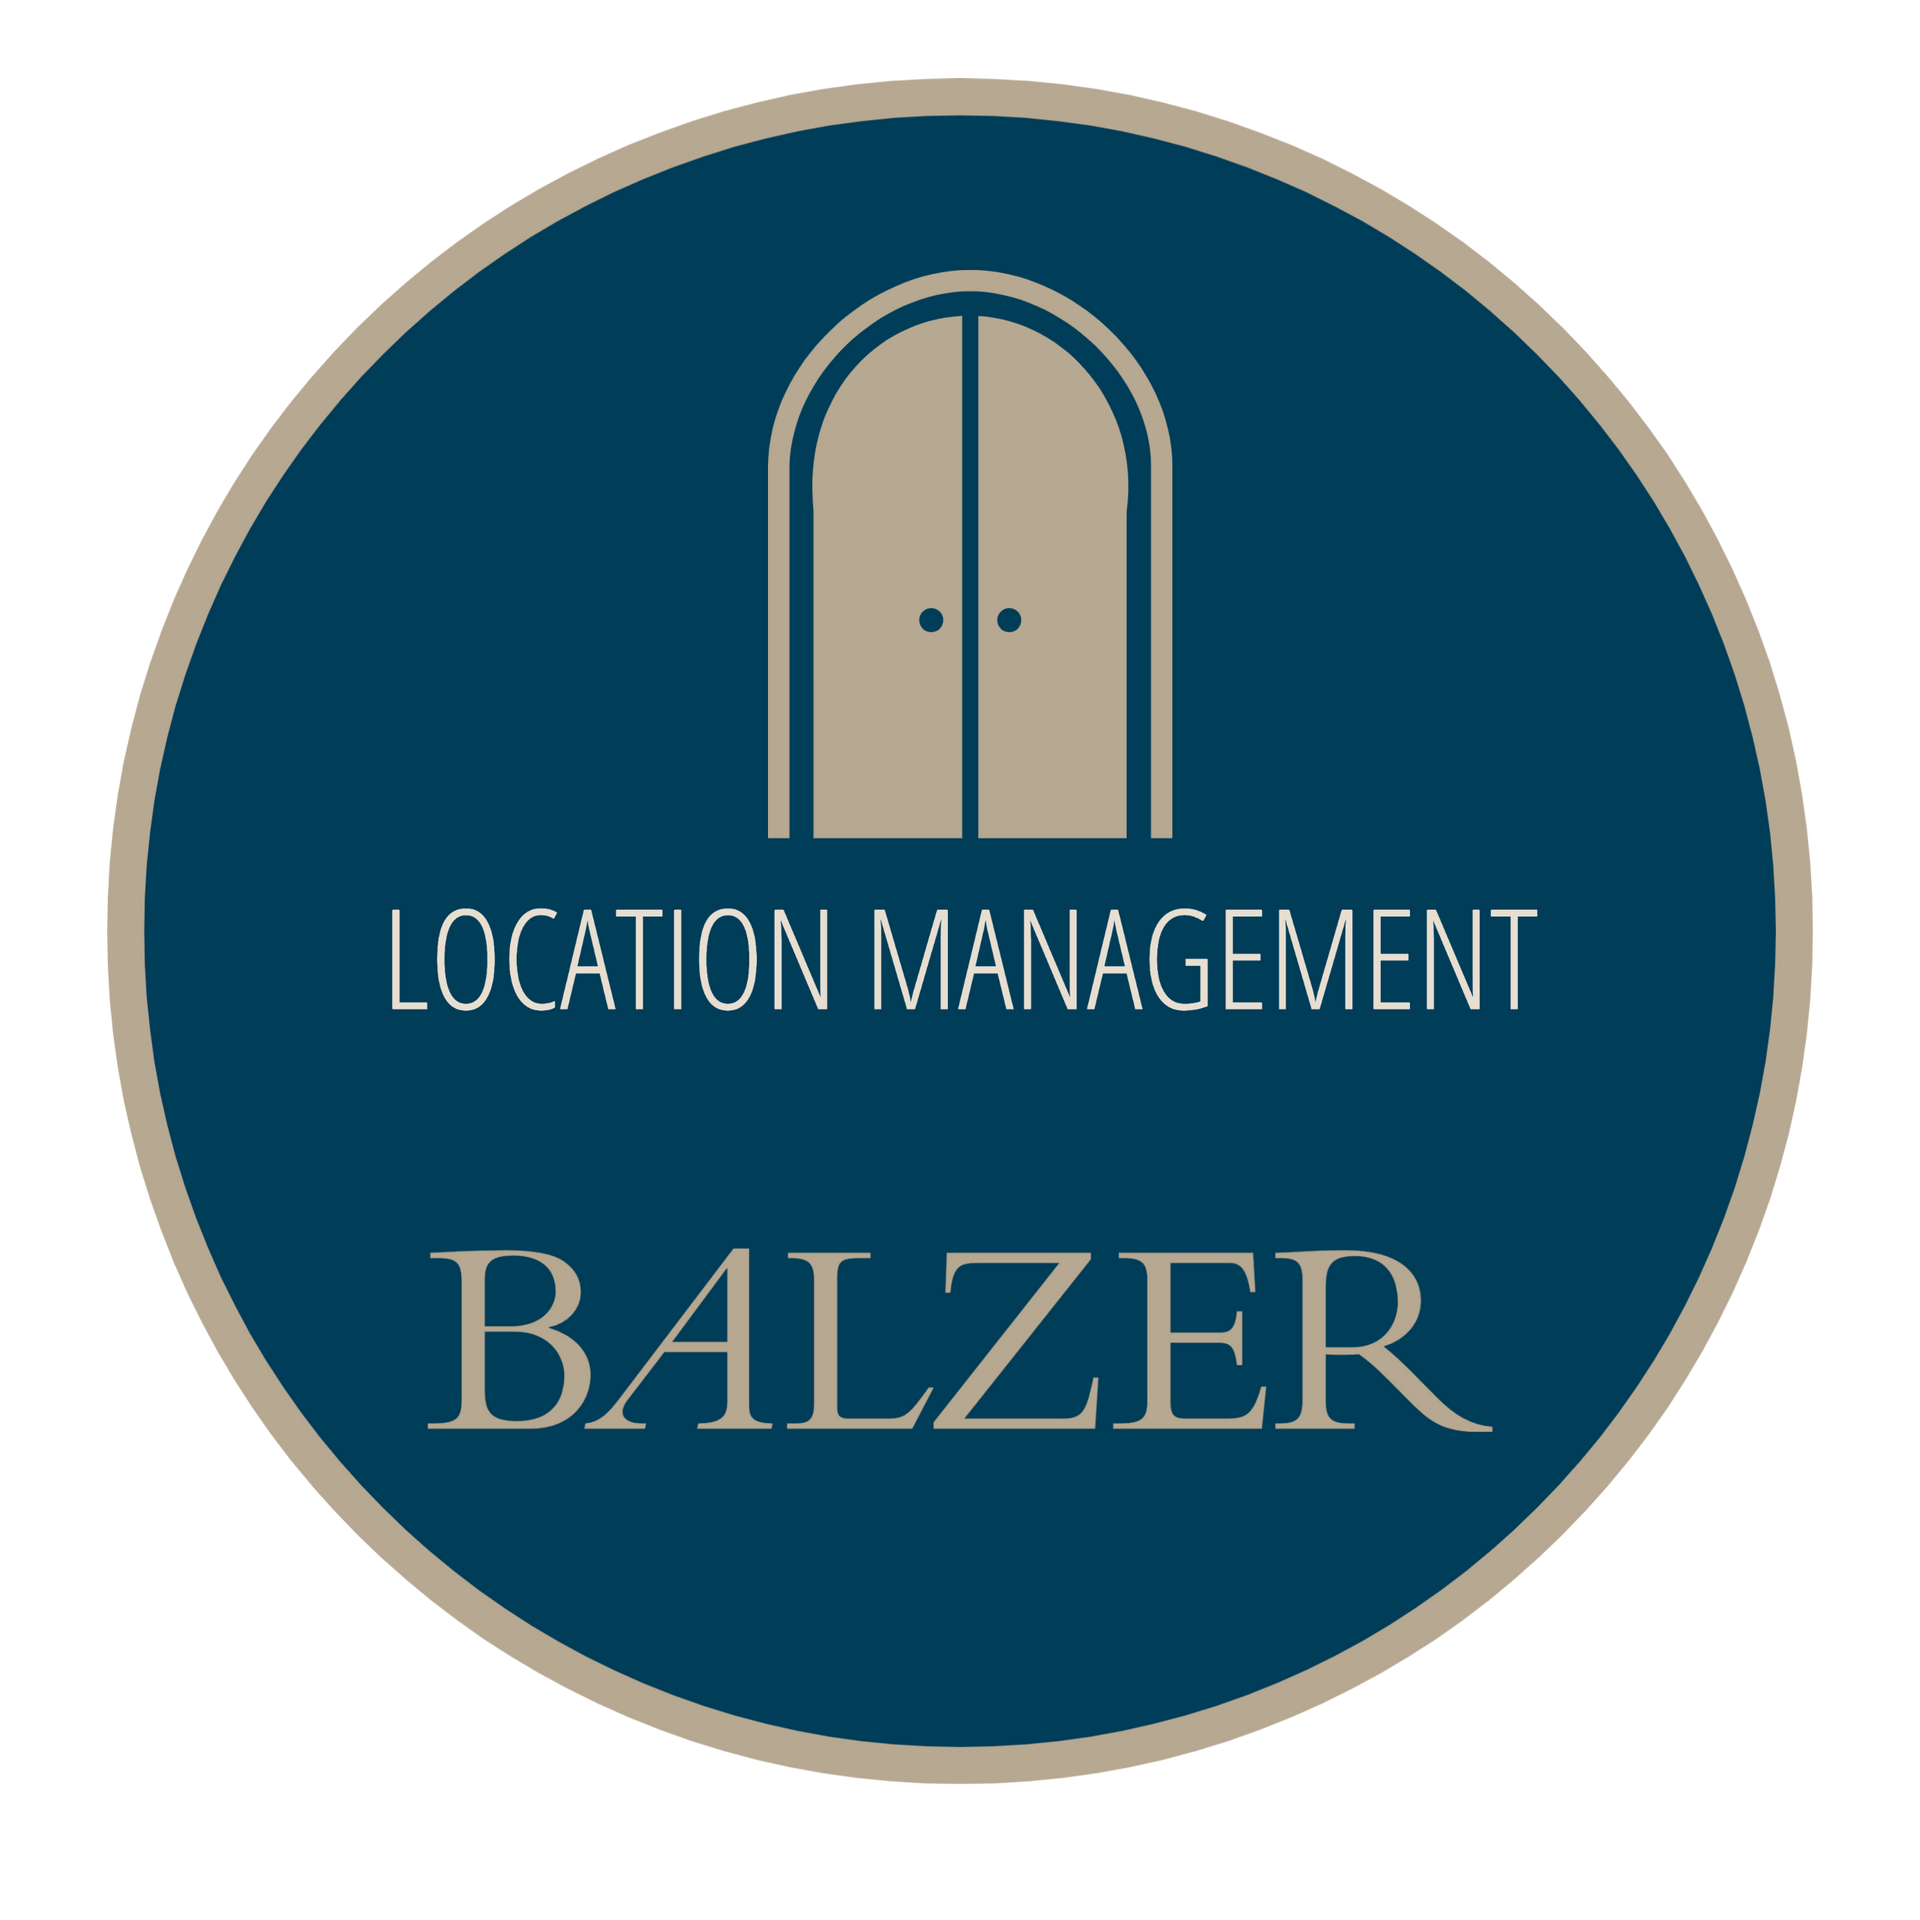 BALZER-Signet-Location-Management